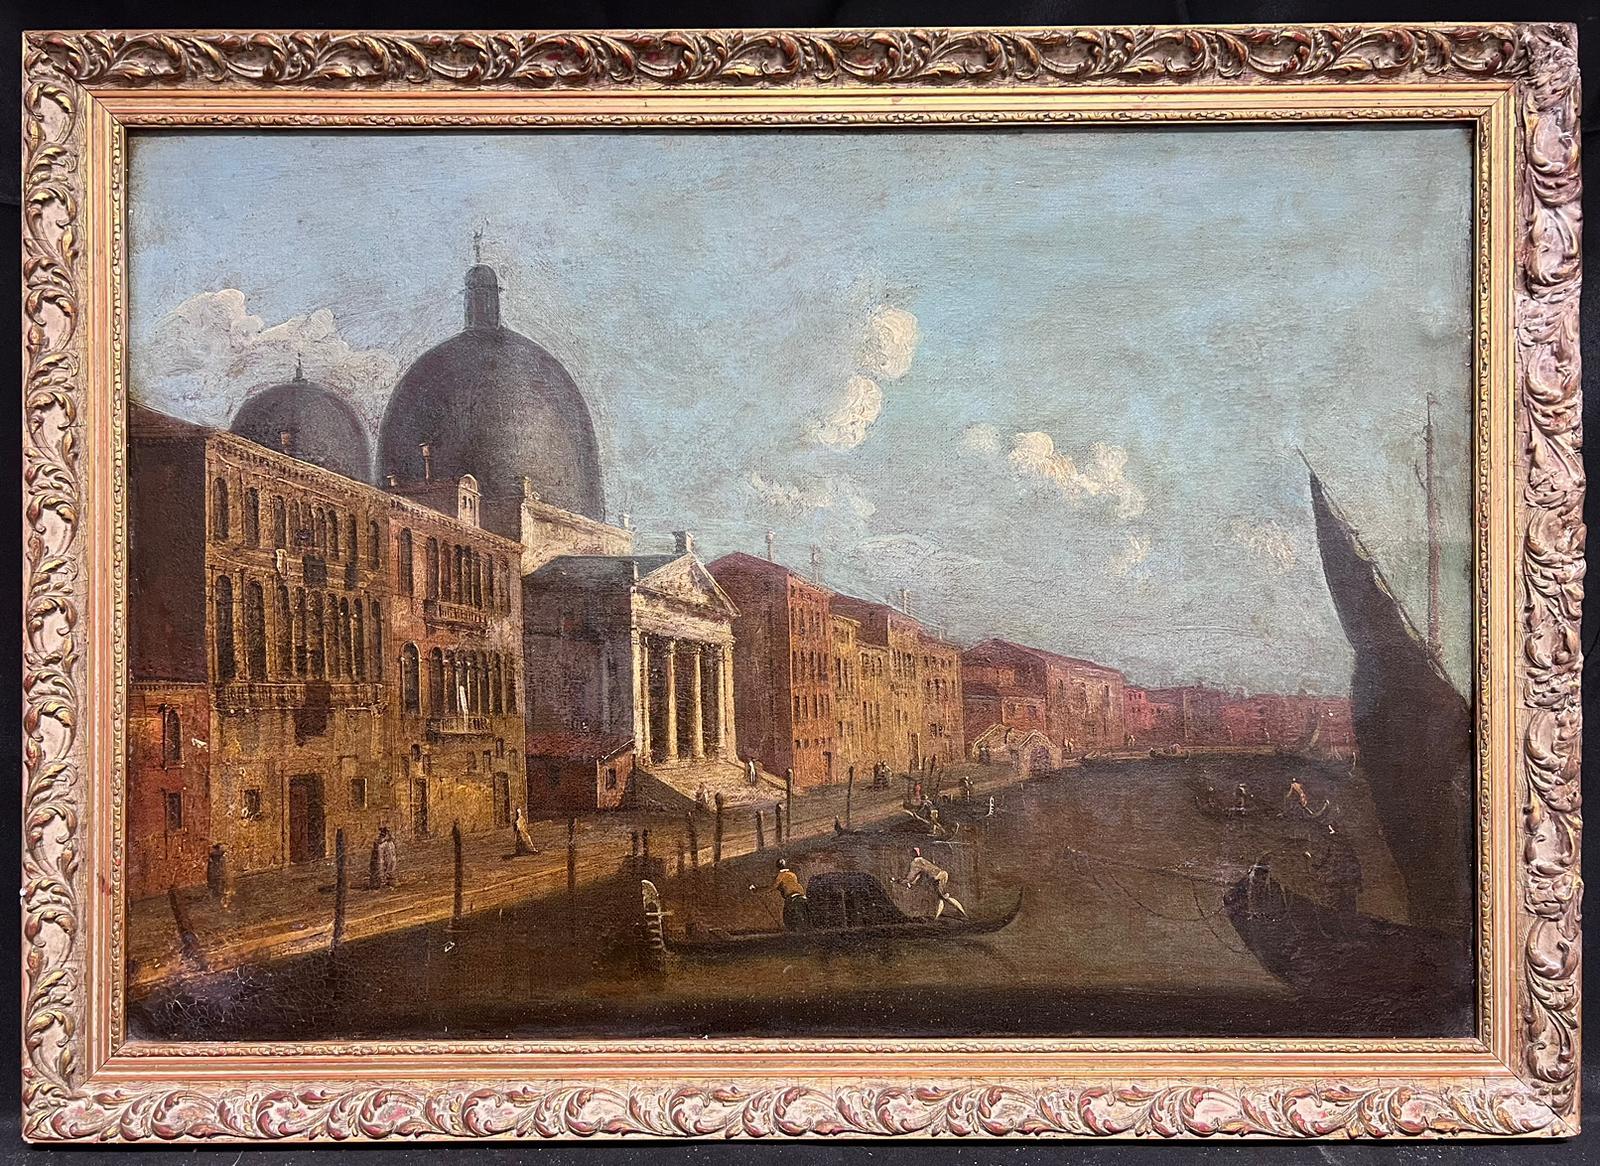 Großes italienisches Ölgemälde des 18. Jahrhunderts, Venedig, Kanal, viele Gebäude und Figuren – Painting von Francesco Guardi